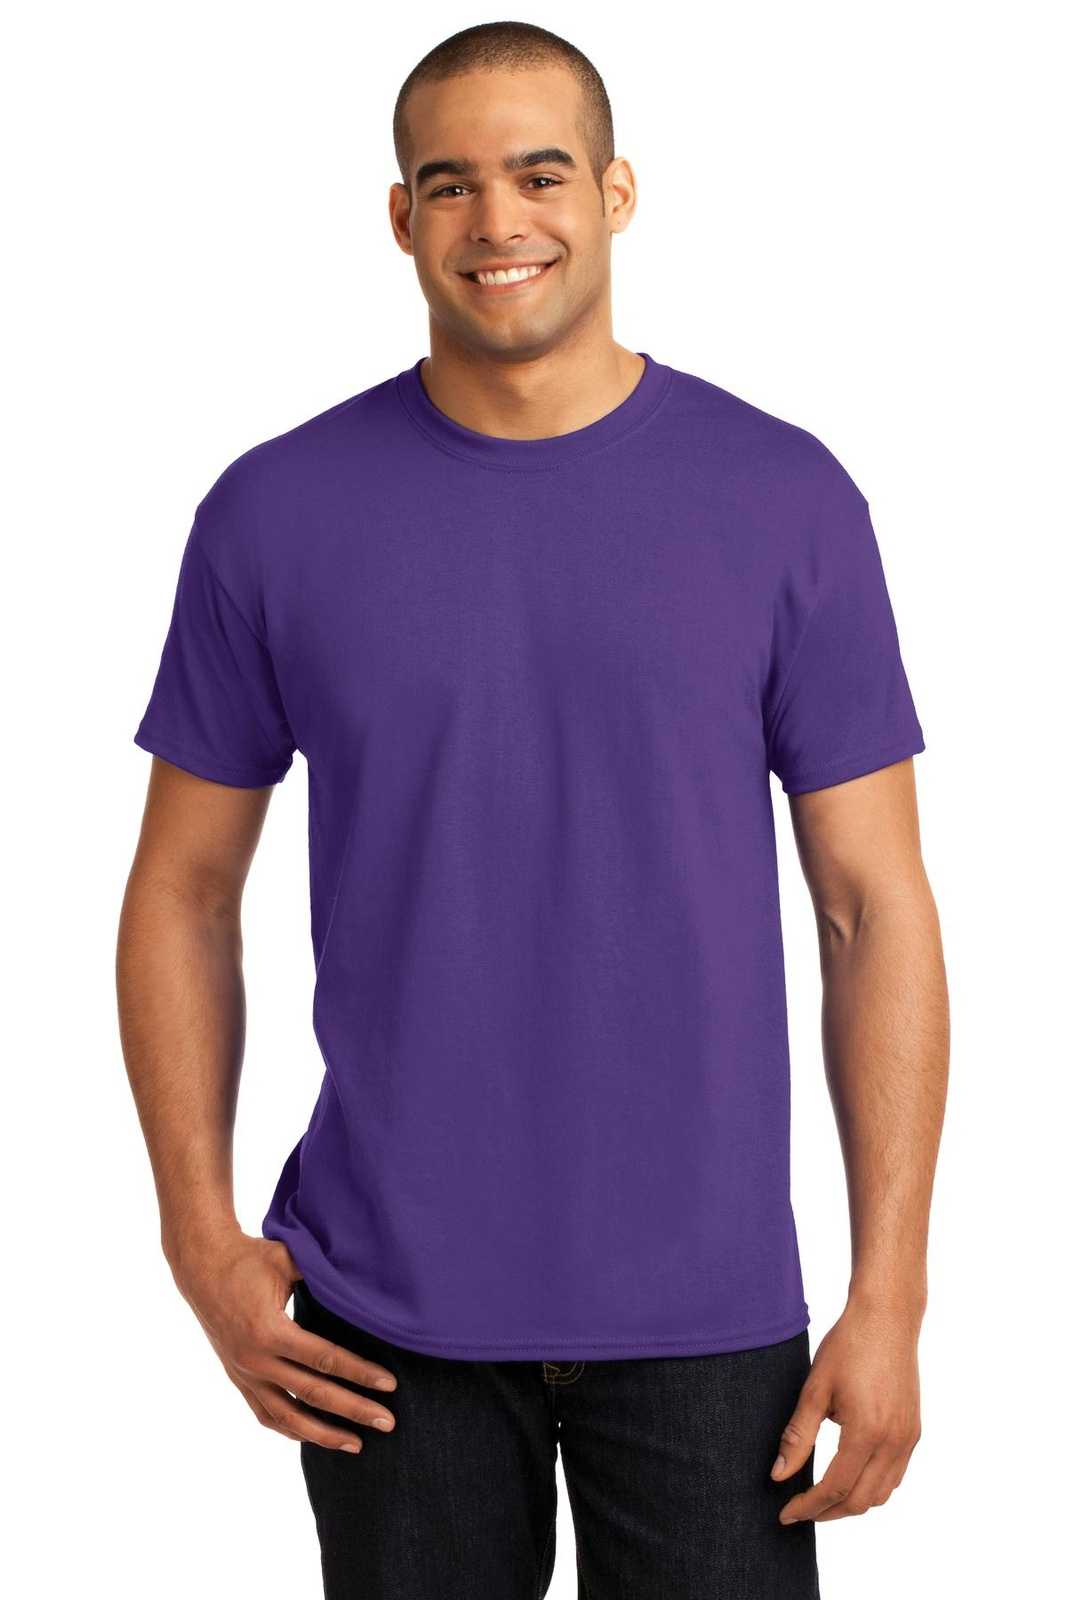 Hanes 5170 Ecosmart 50/50 Cotton/Poly T-Shirt - Purple - HIT a Double